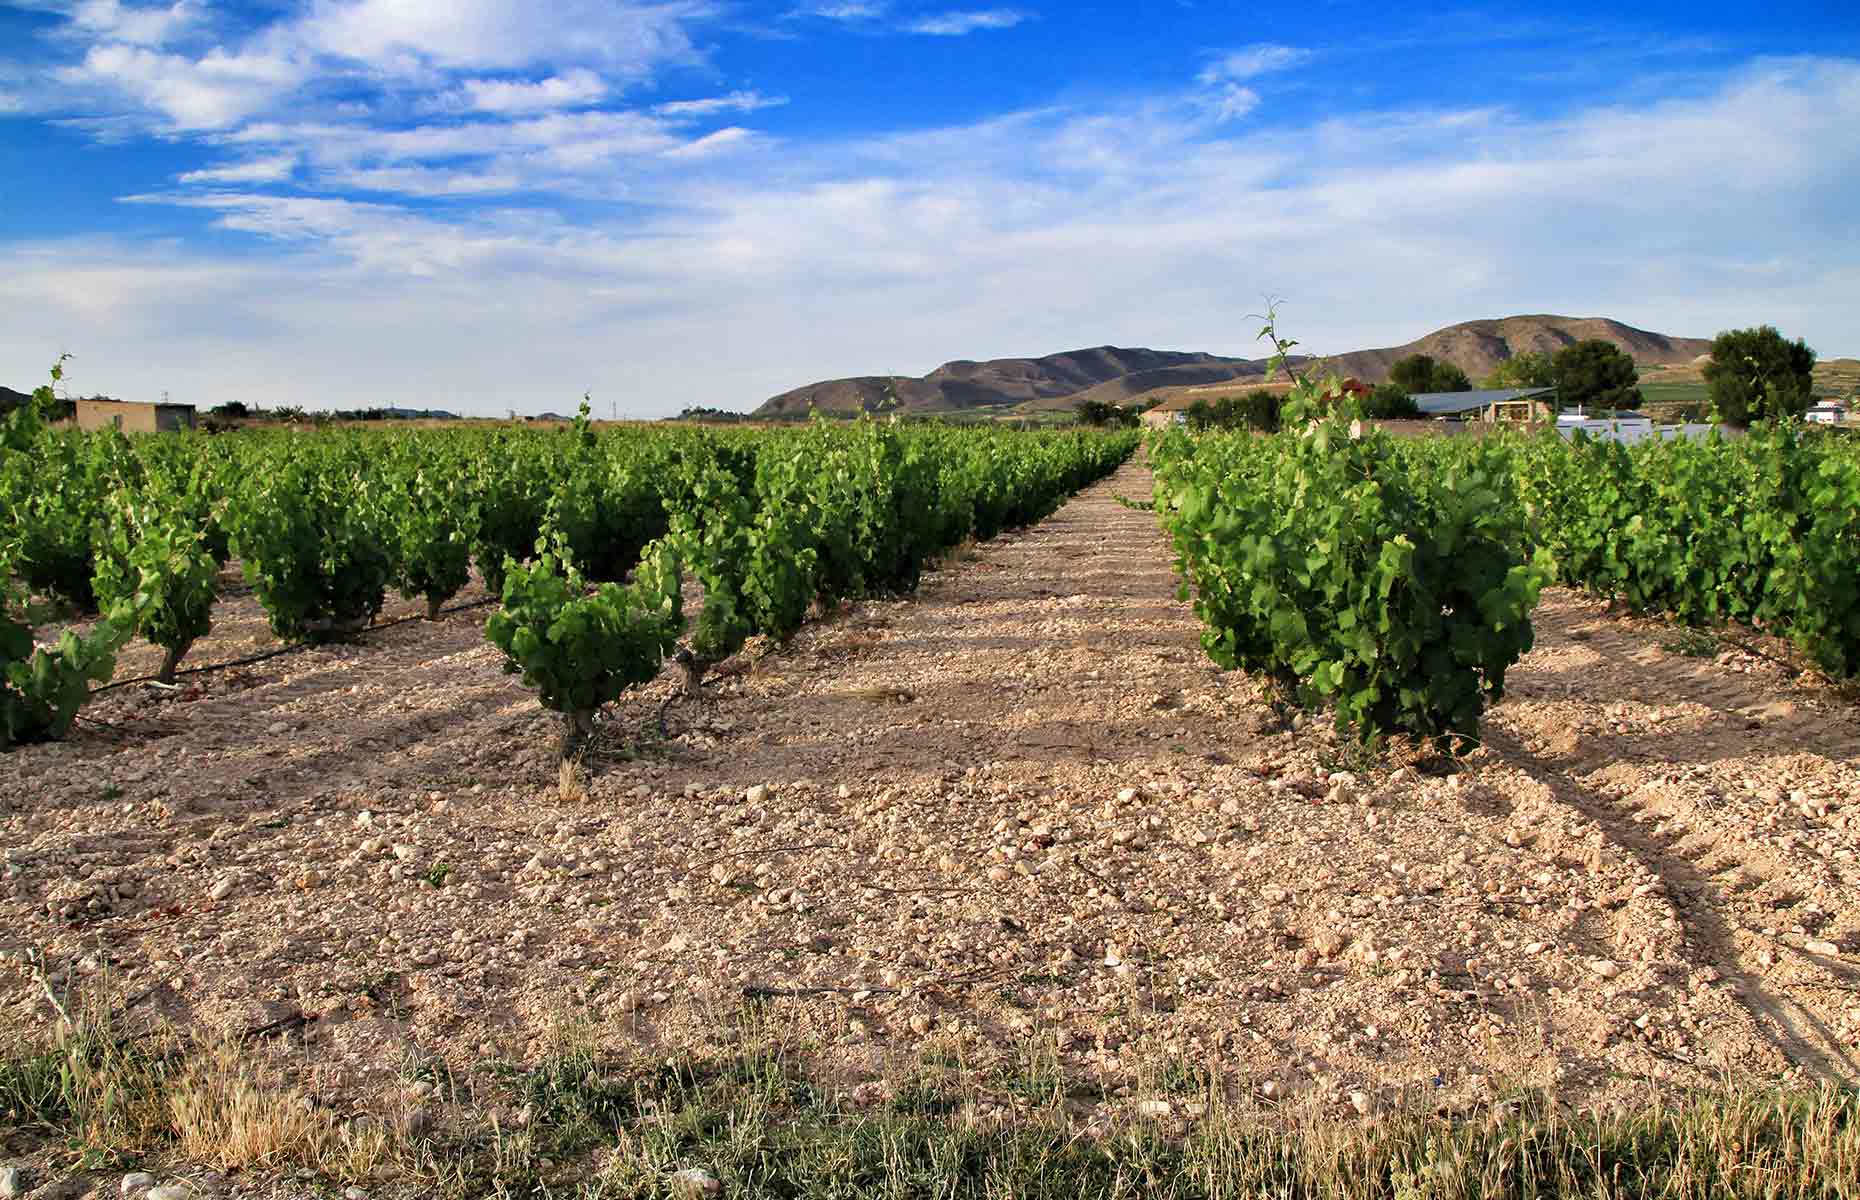 Winery in Murcia, Spain (Image: Sonia Bonet/Shutterstock)